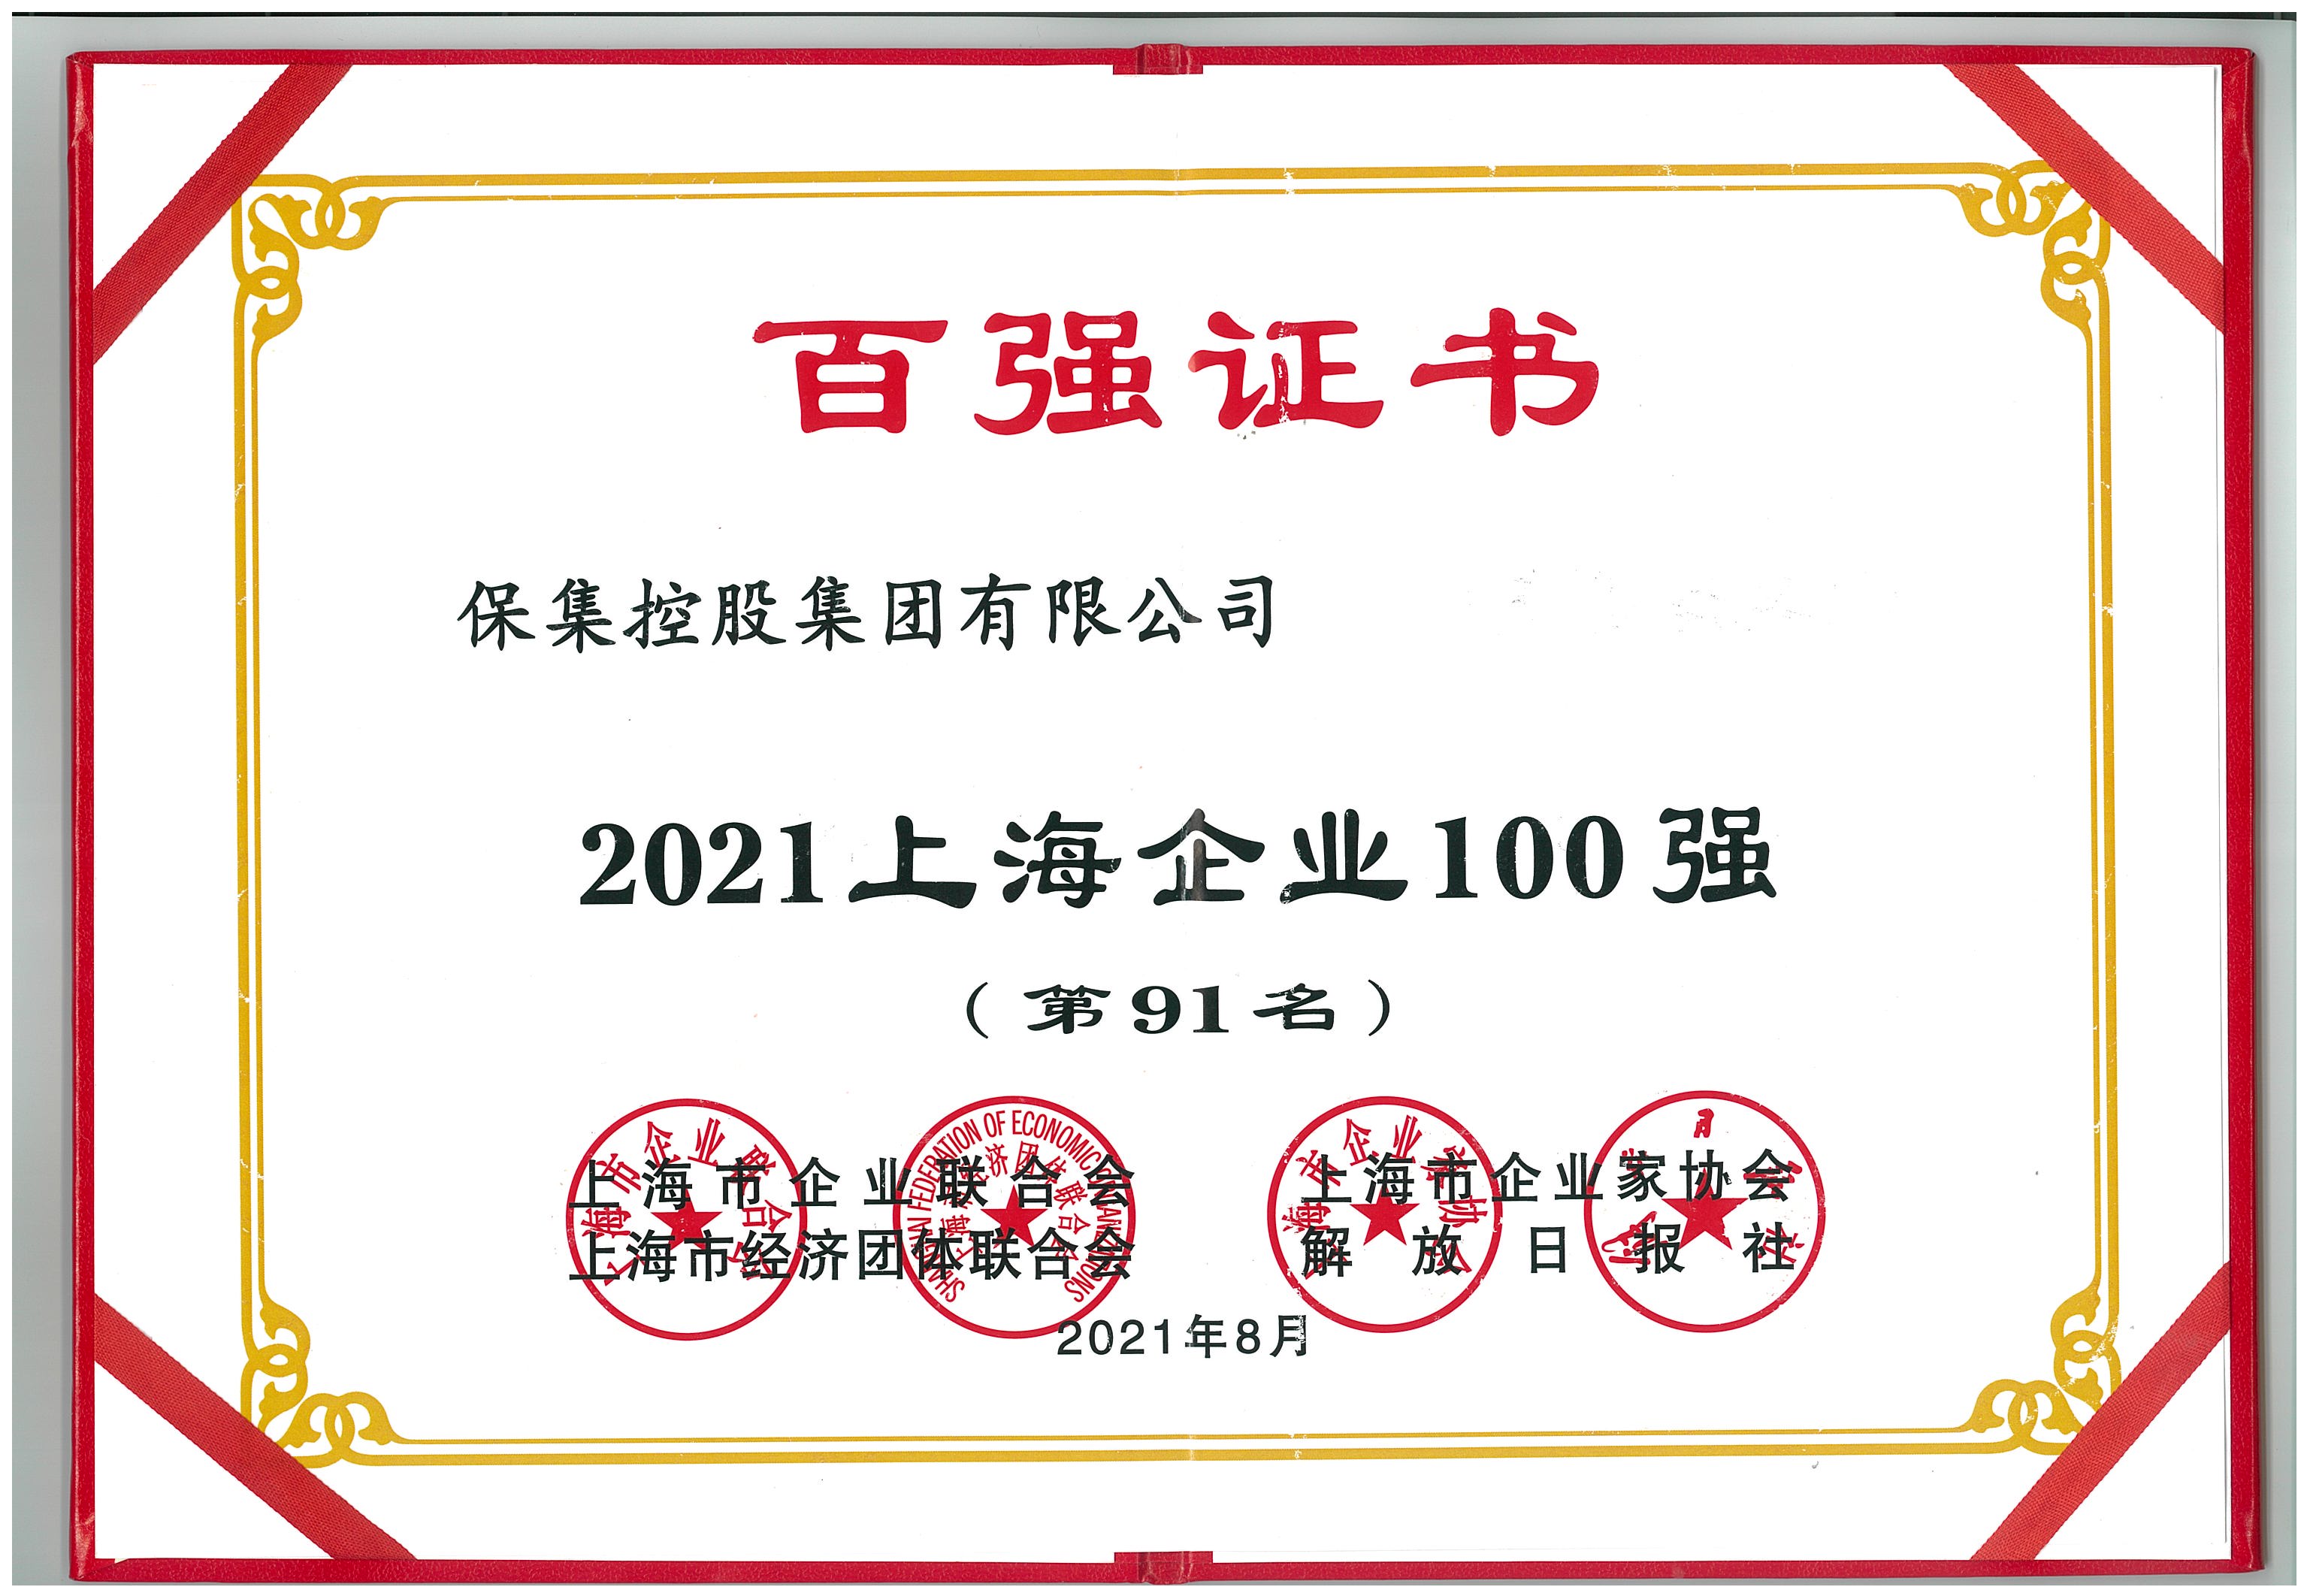 【集团新闻】| 祝贺保集控股集团荣登“2021上海企业100强”和“2021上海民营企业100强”